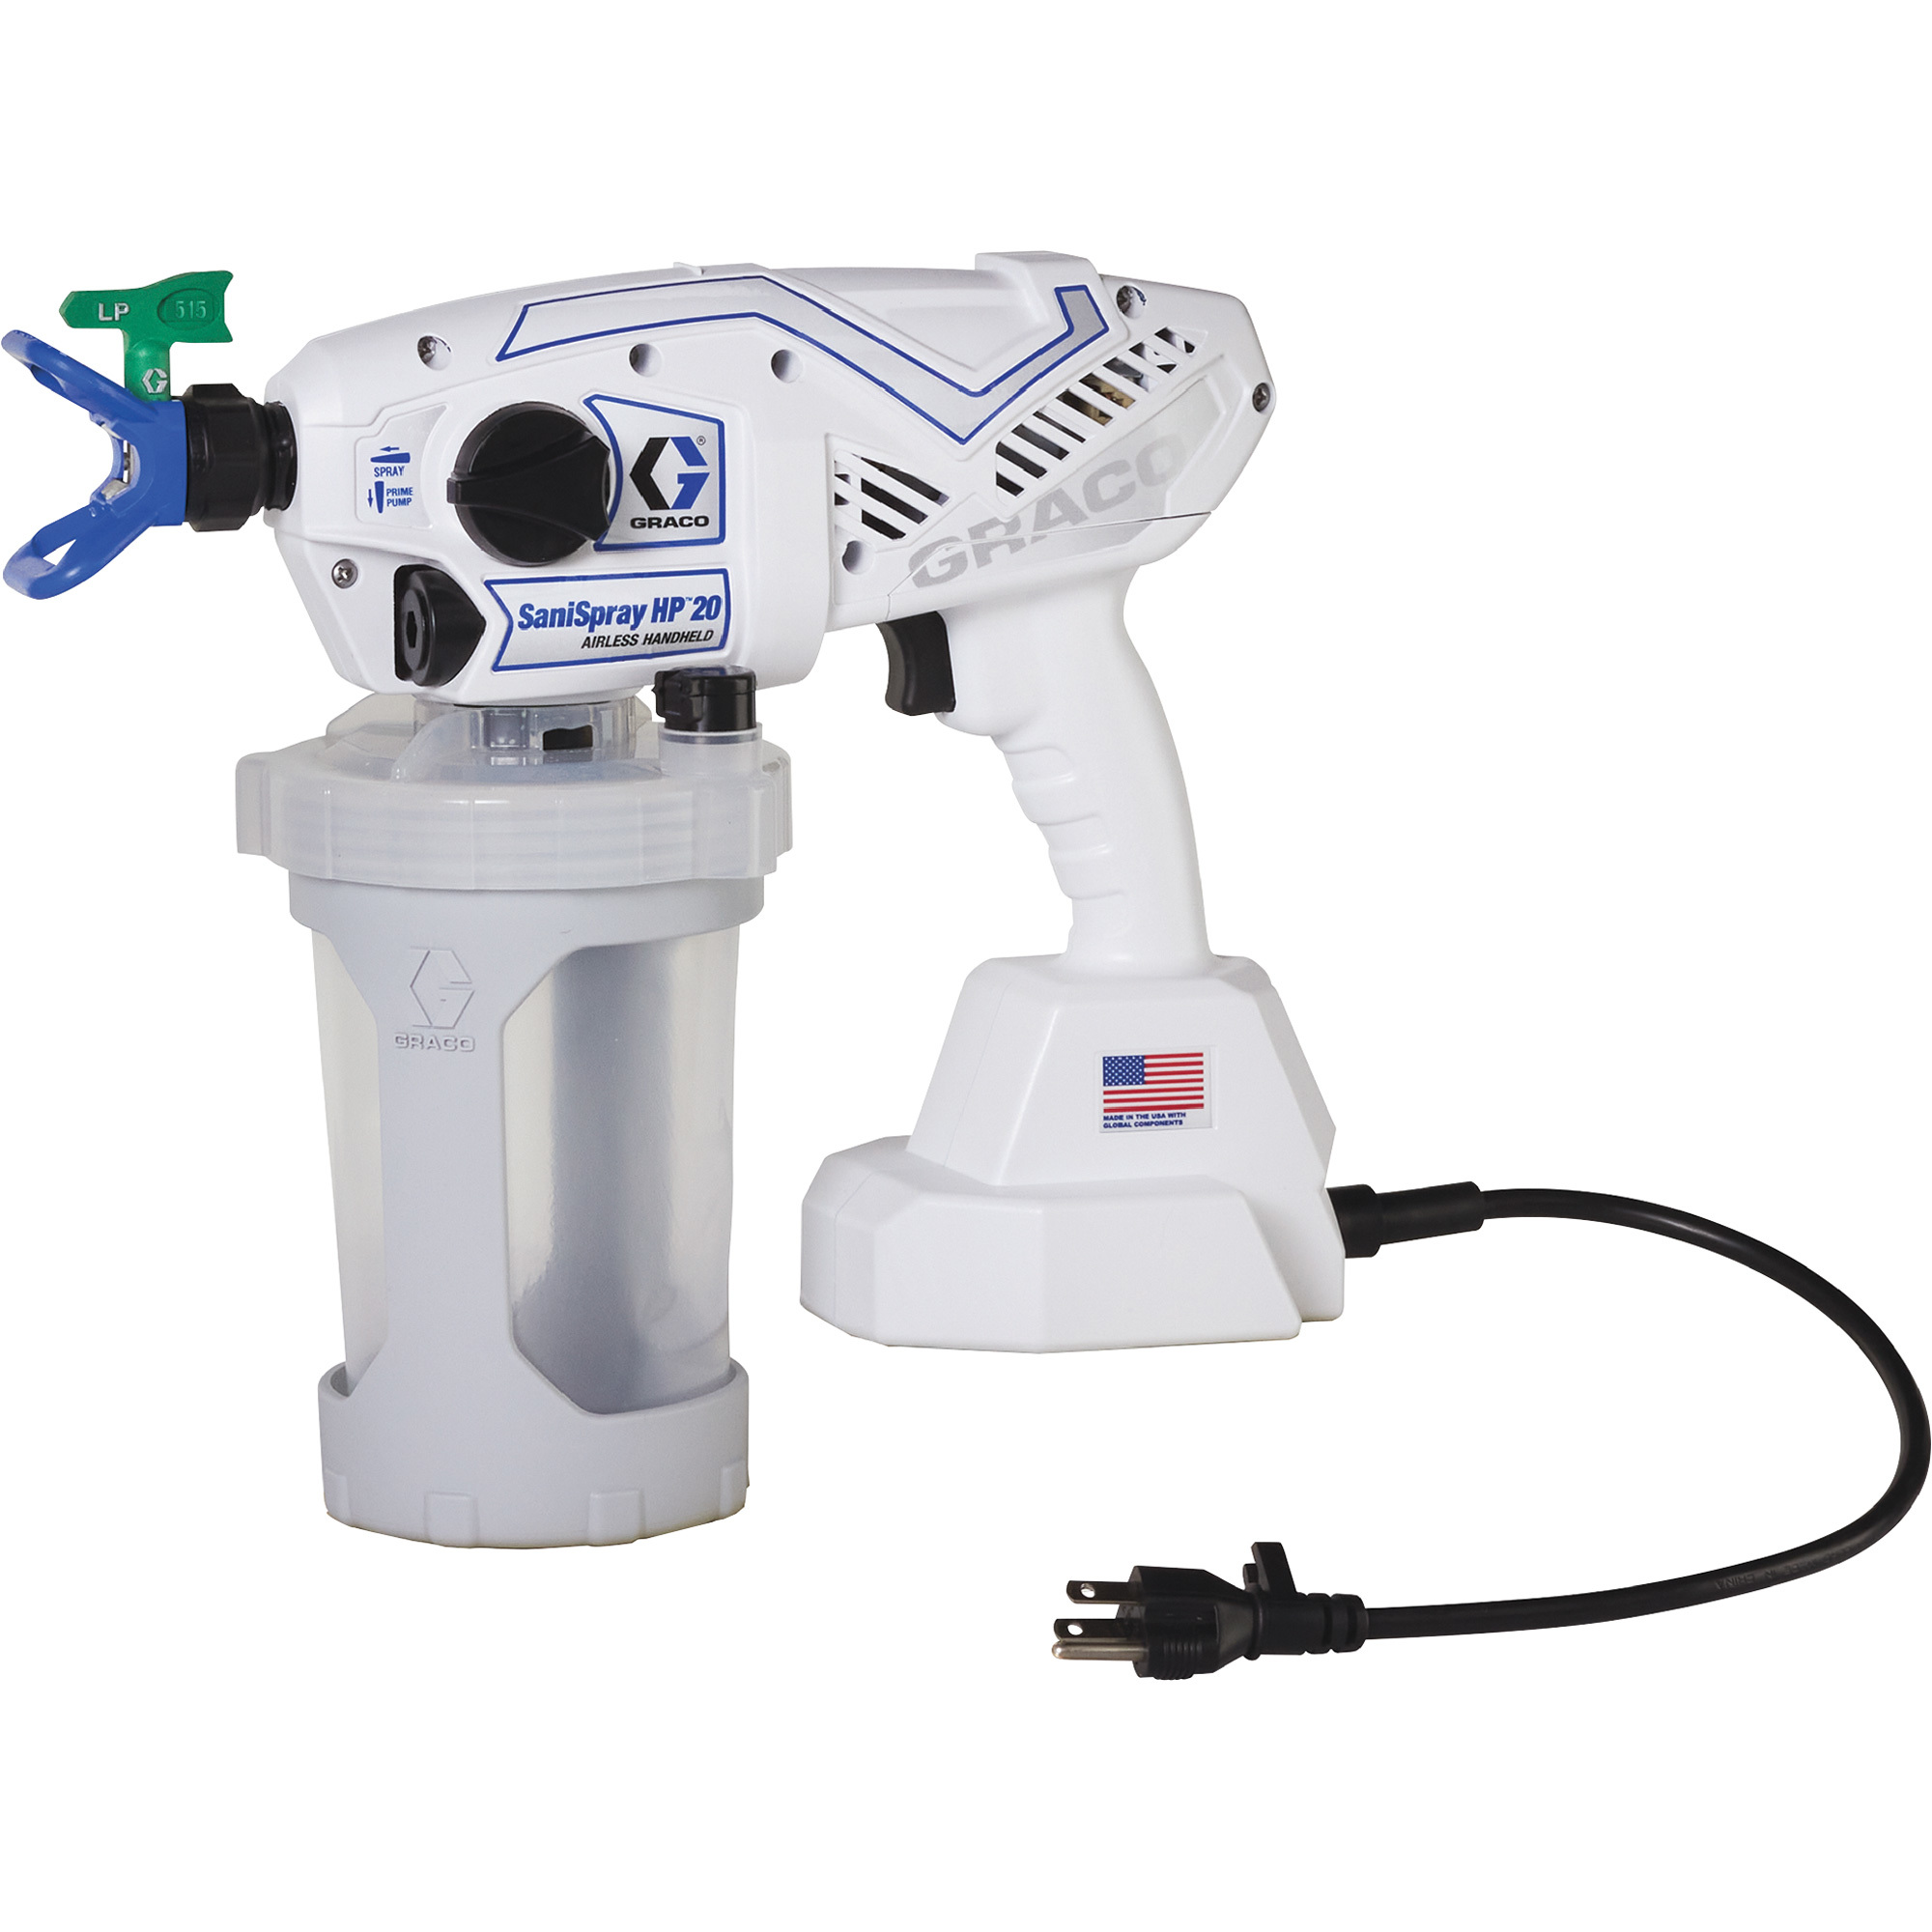 Graco SaniSpray HP20 Portable Disinfectant Sprayer â 1000 PSI, 0.3-Gallon Capacity, Model 25R790